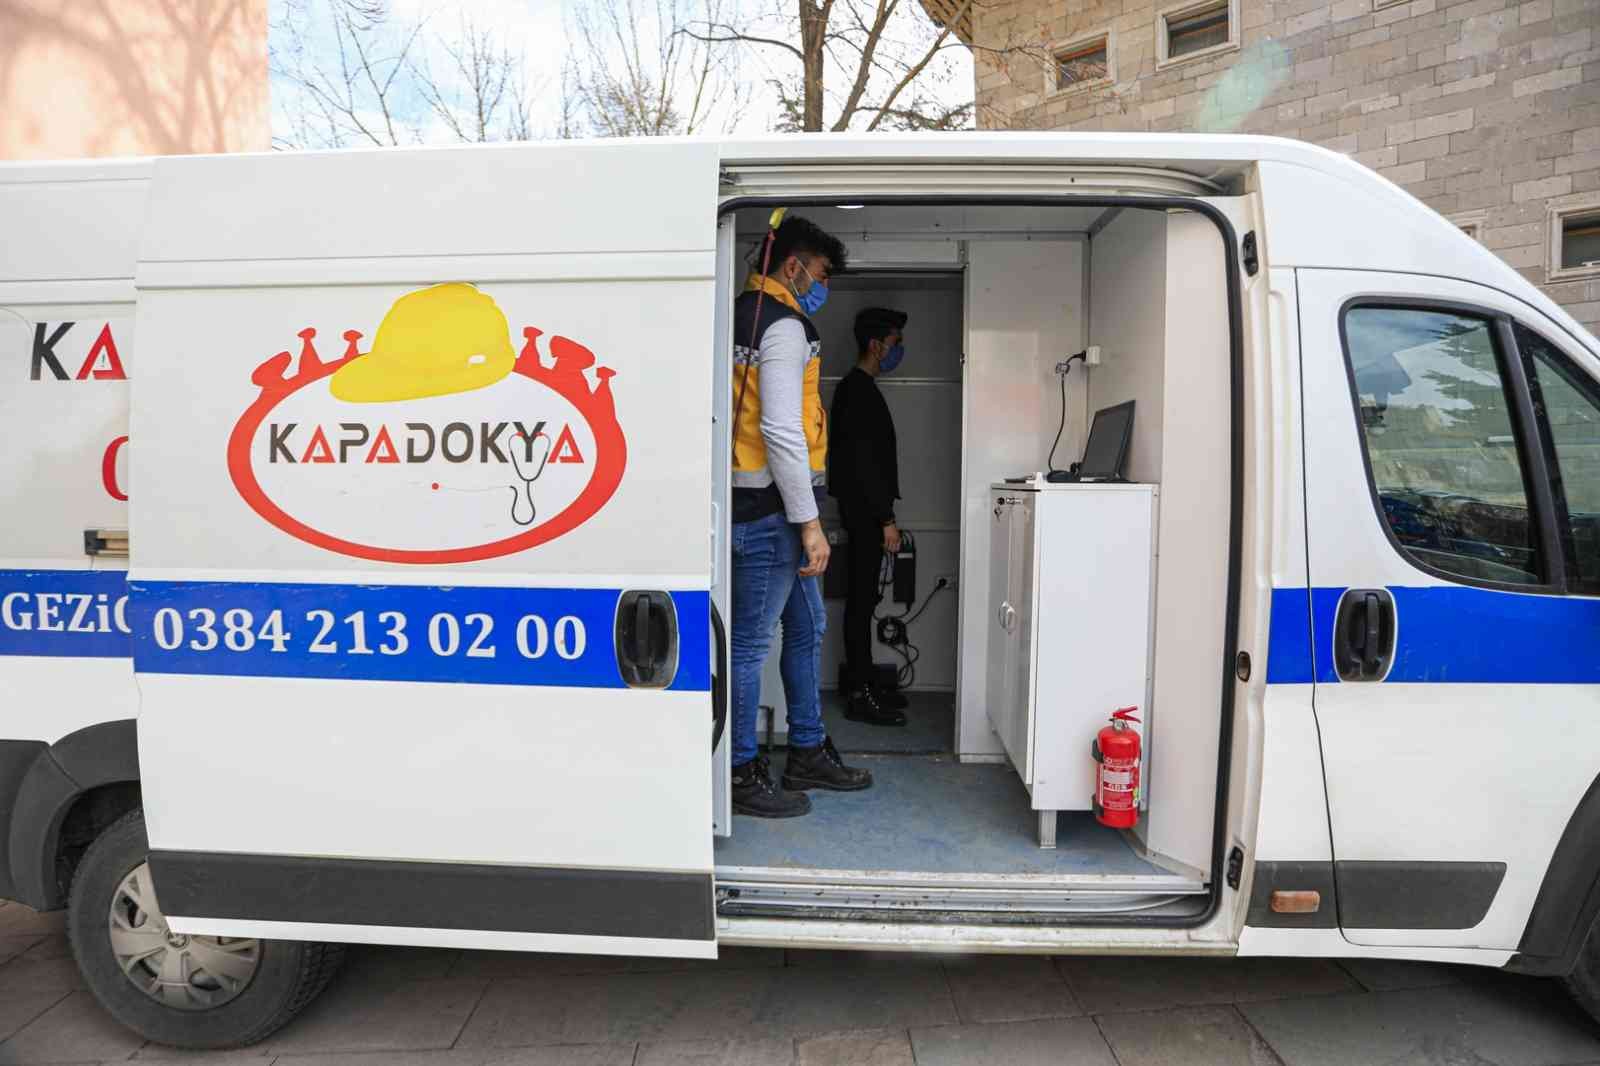 Nevşehir Belediye personelleri sağlık taramasından geçirildi #nevsehir